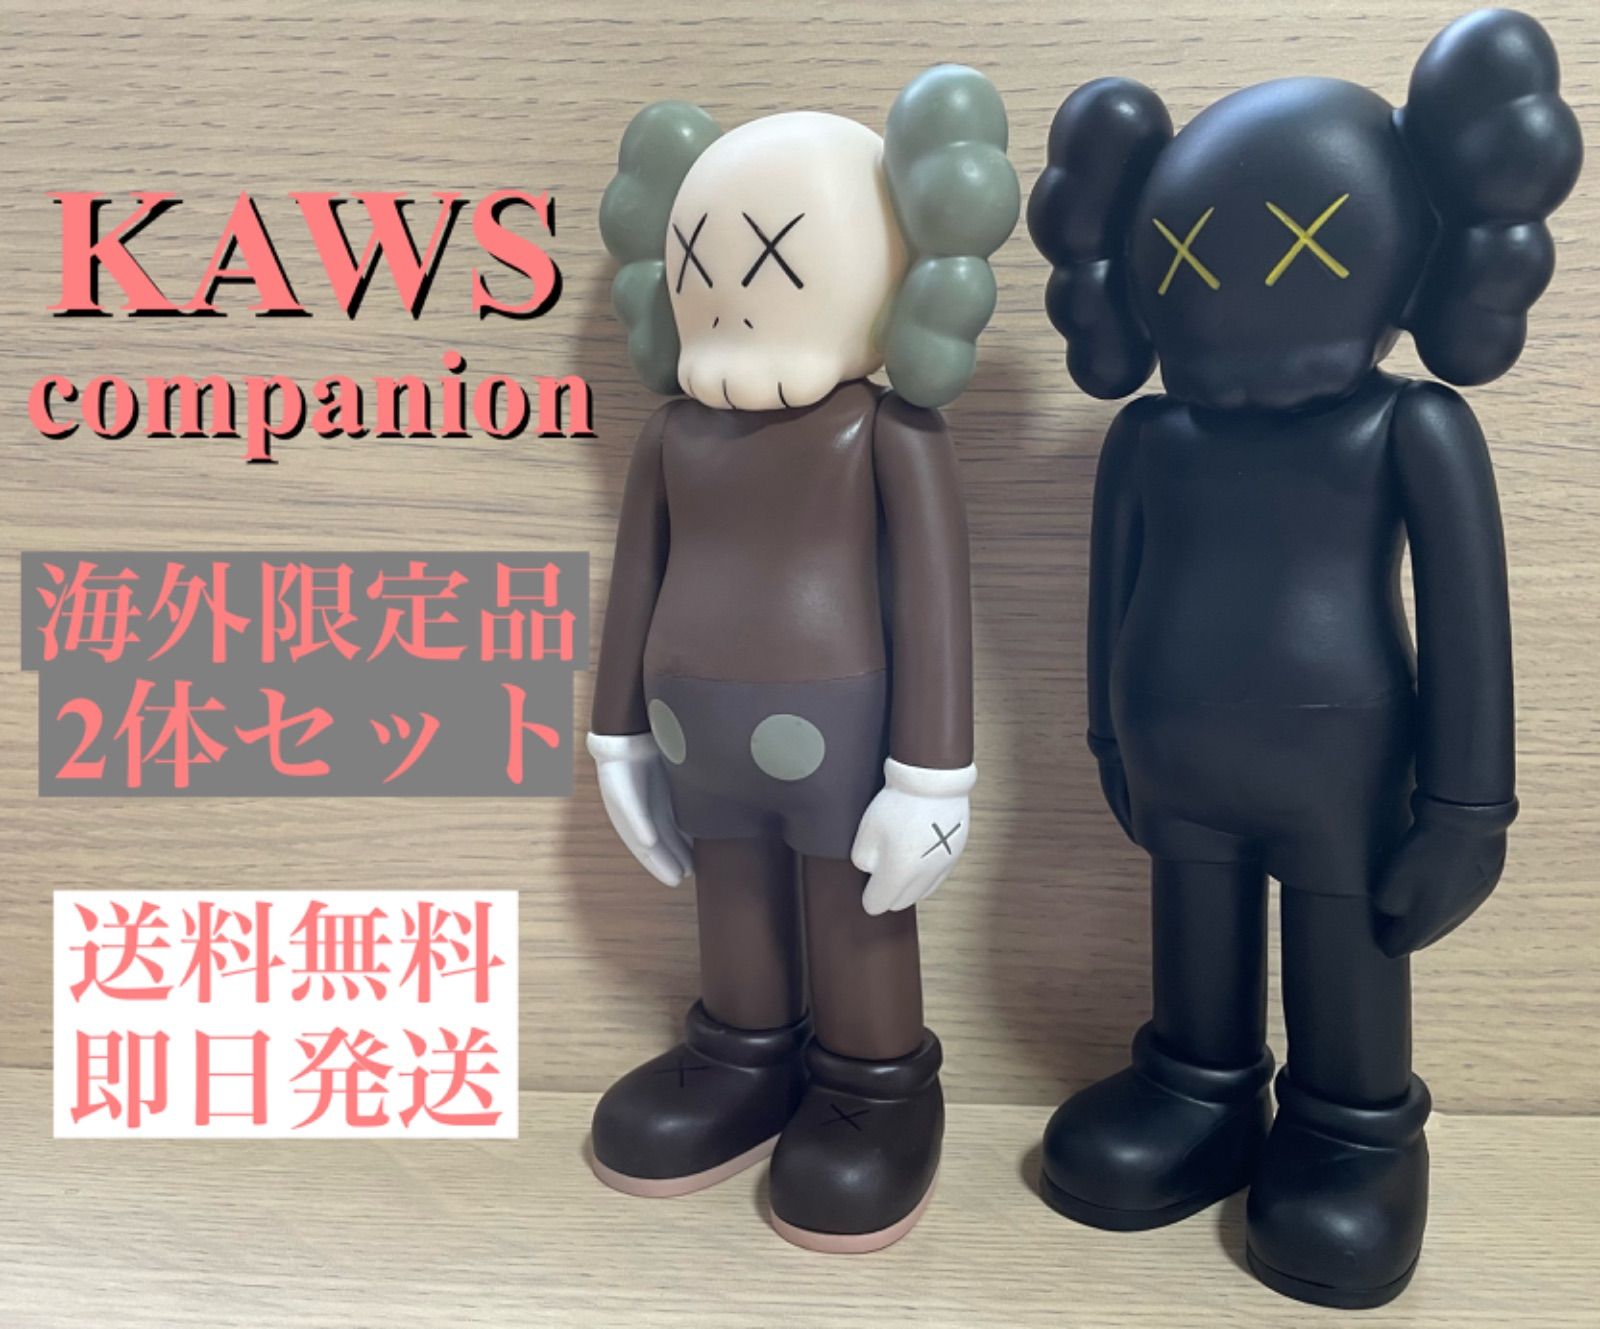 メルカリShops - Kaws カウズ フィギュア companion 2体セット 約18㎝